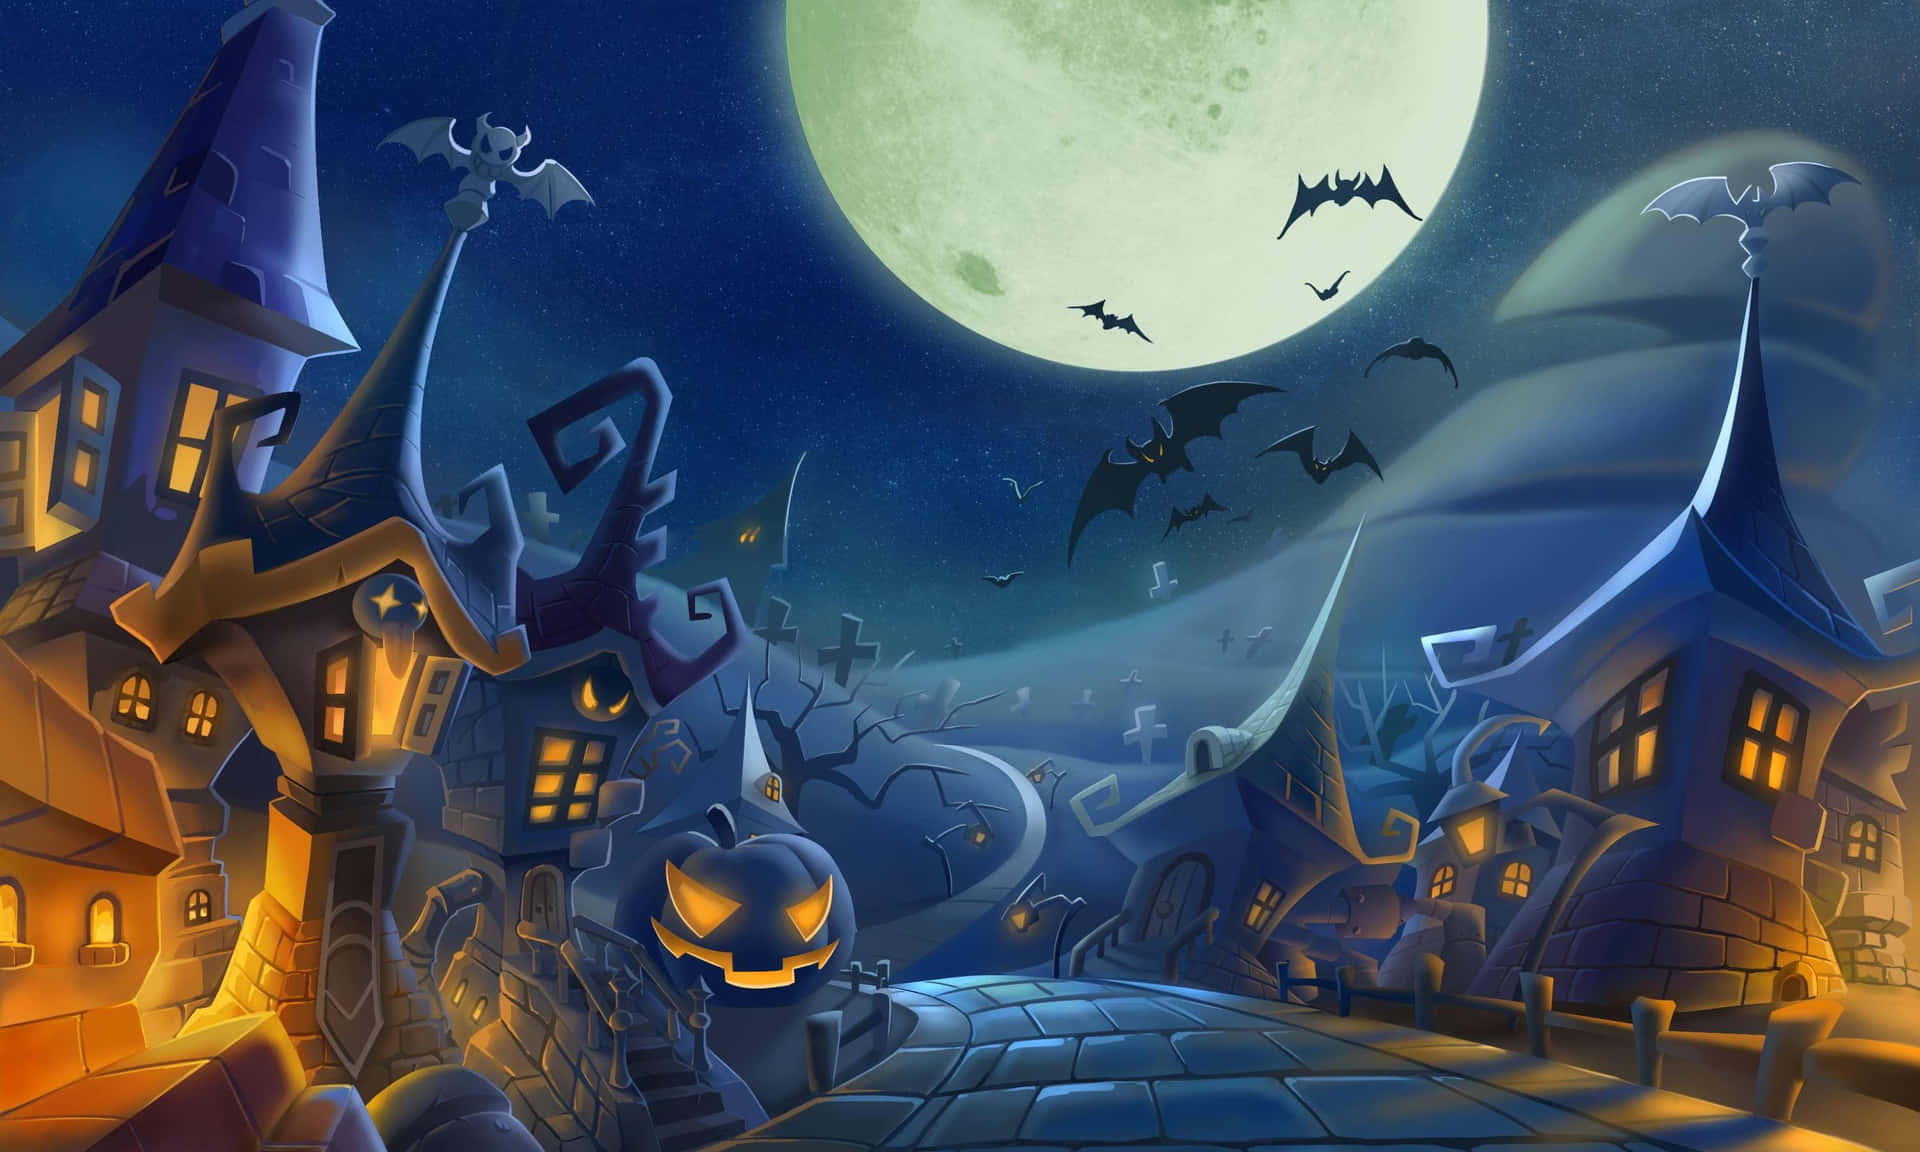 A magical evening in Halloweentown Wallpaper